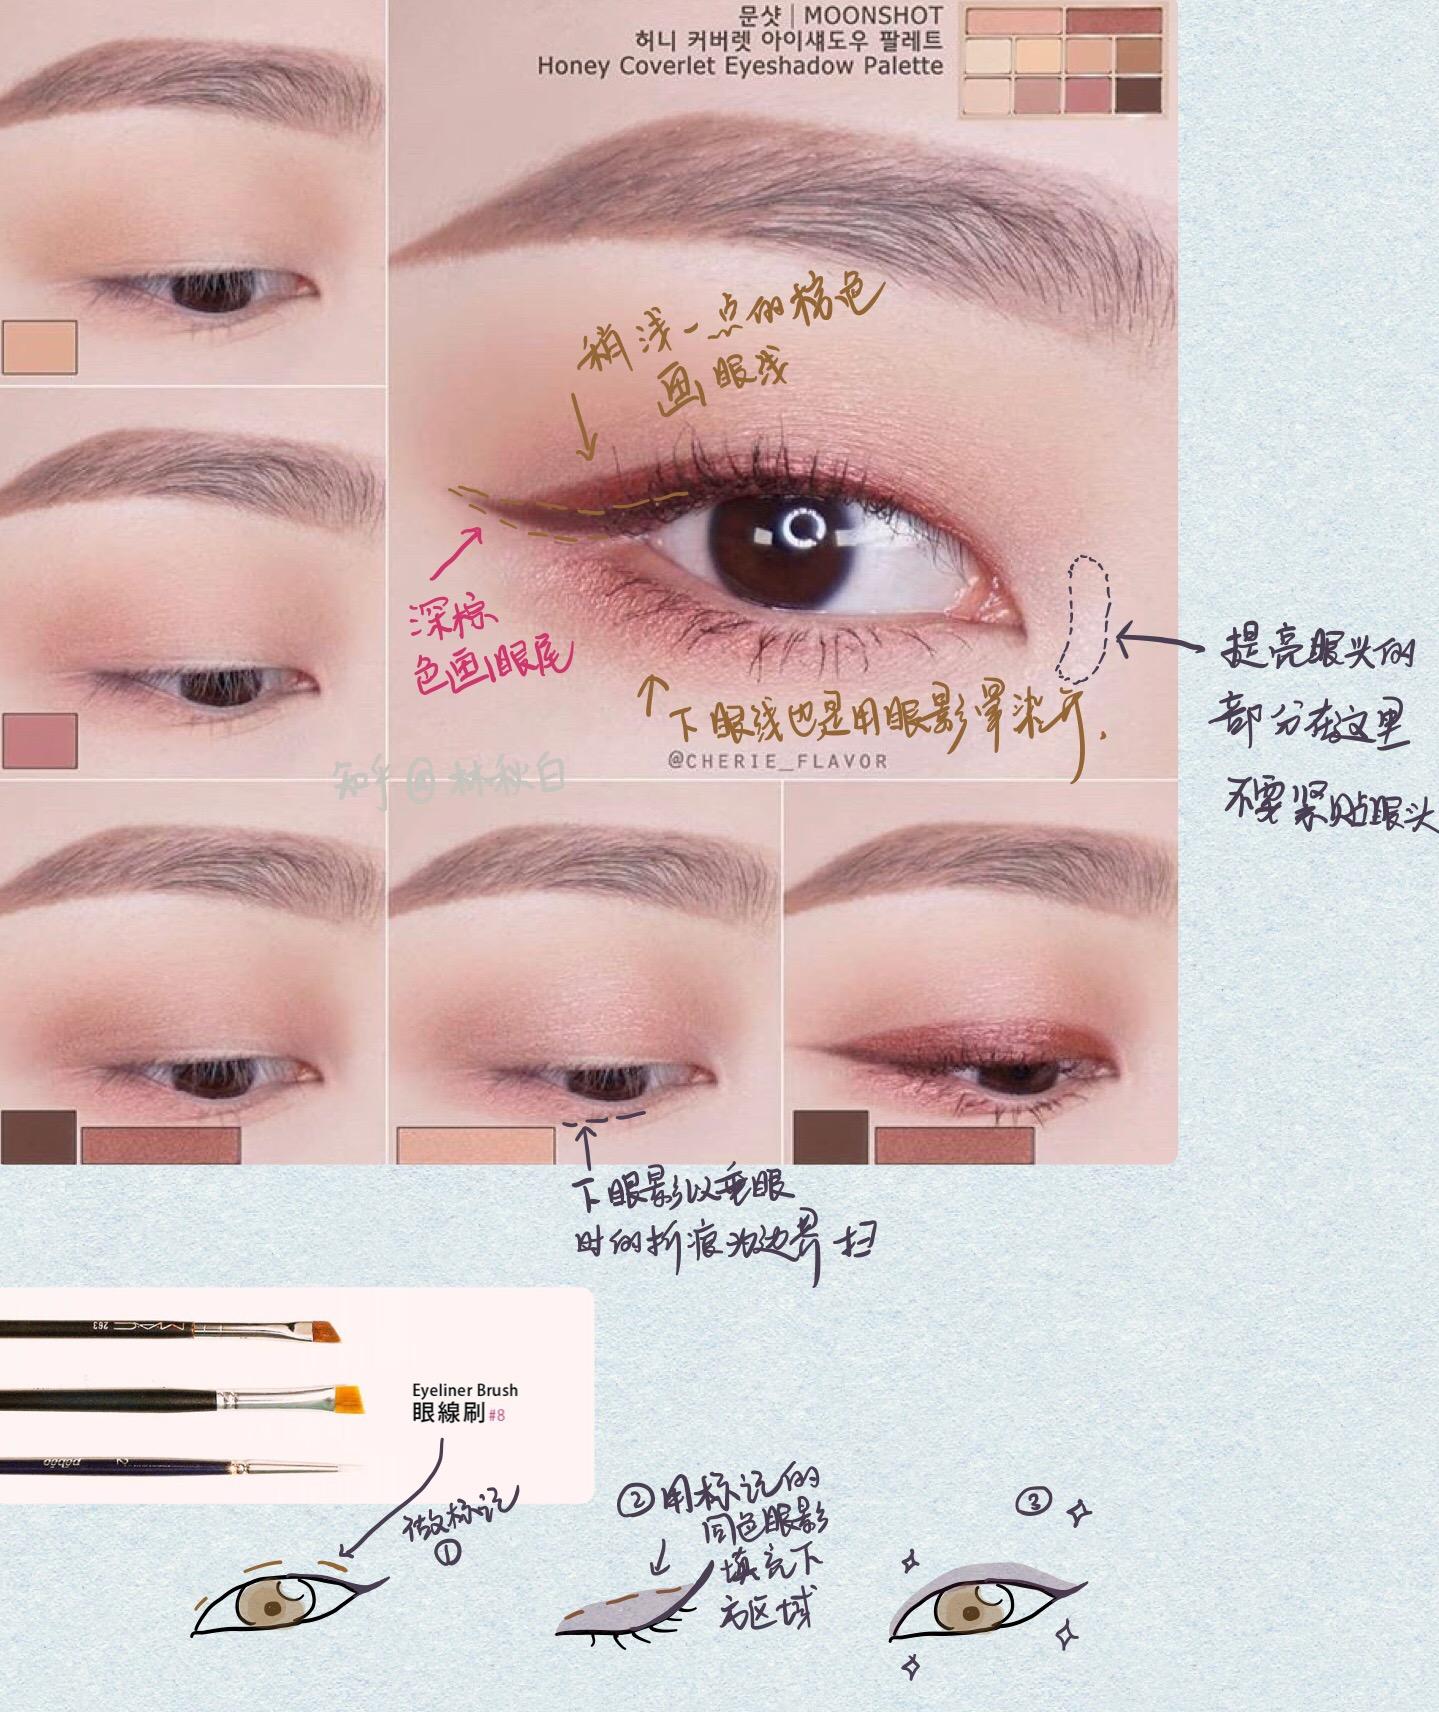 新手眼妆的画法步骤图，六种适合新手的眼影画法 - 美妆交流 - 可爱网 - 最有爱的时尚美妆社区 | 美容·化妆·护肤·交流